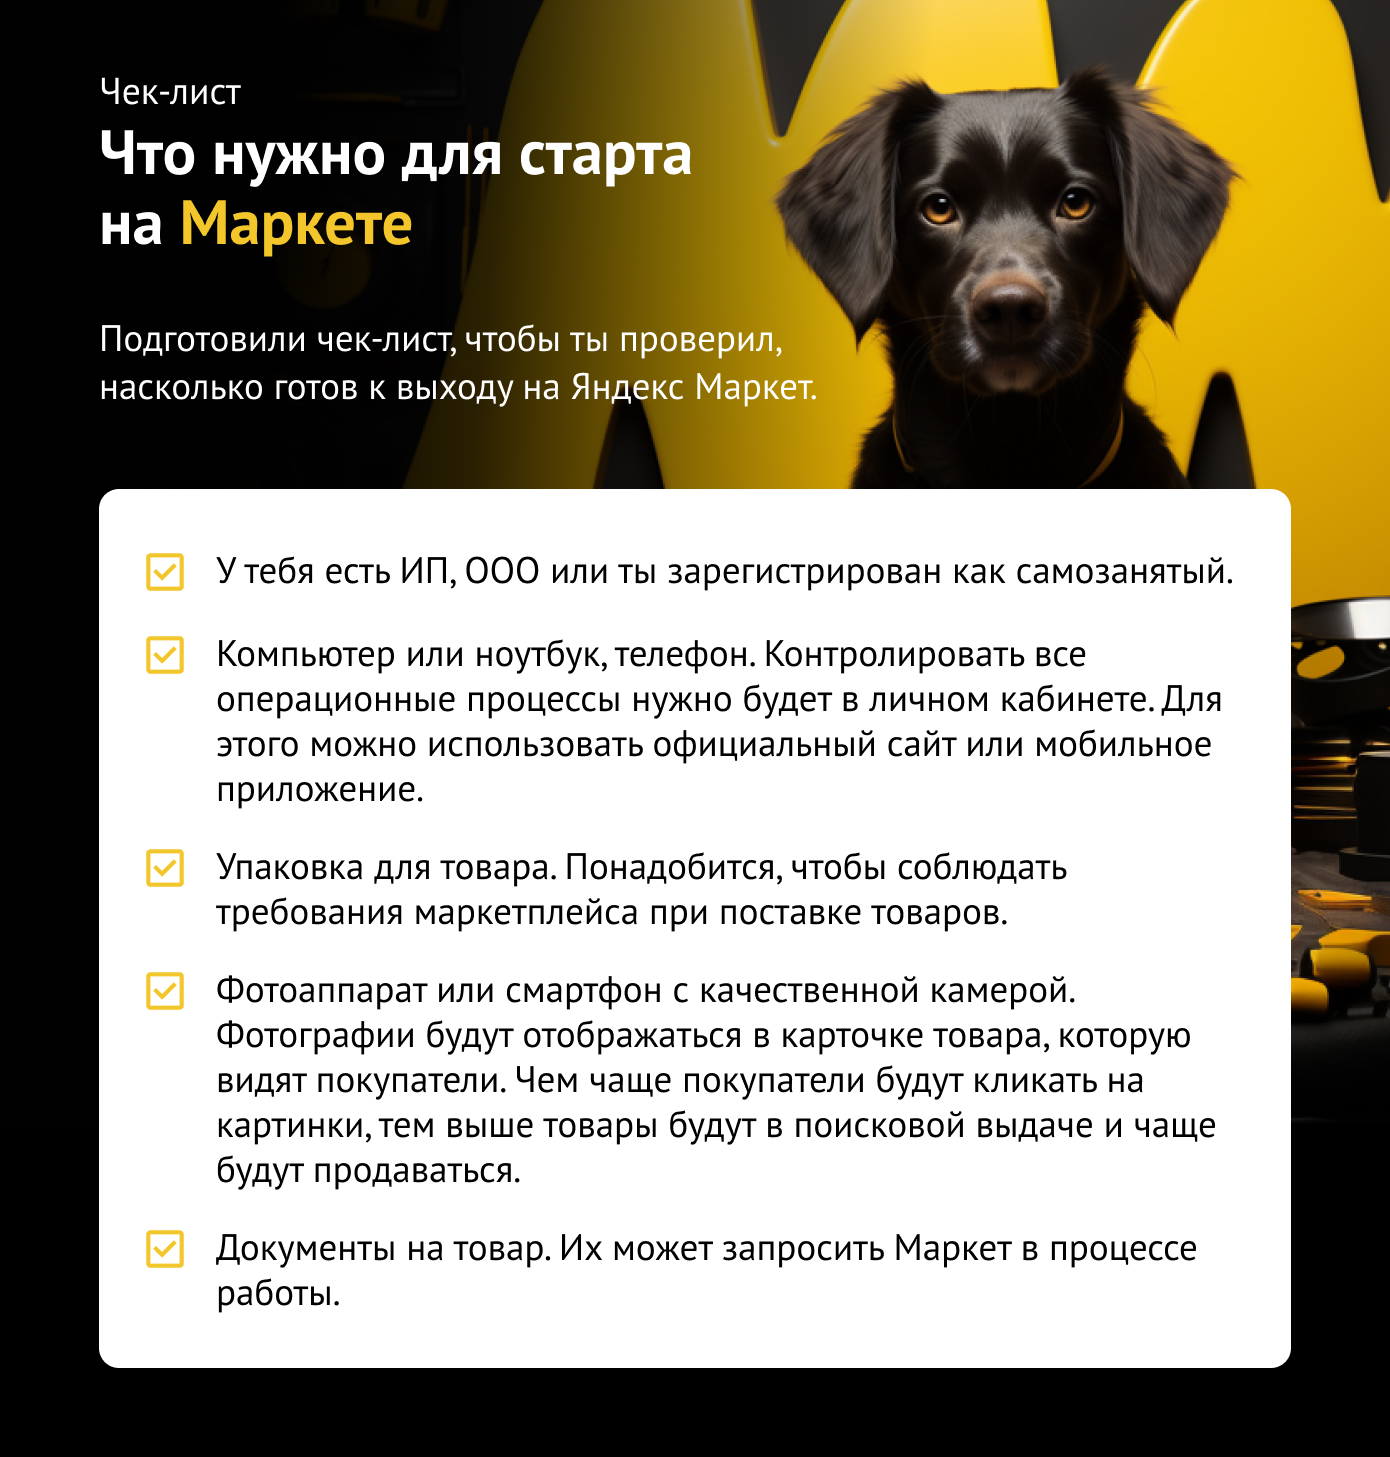 Как торговать на Яндекс Маркете